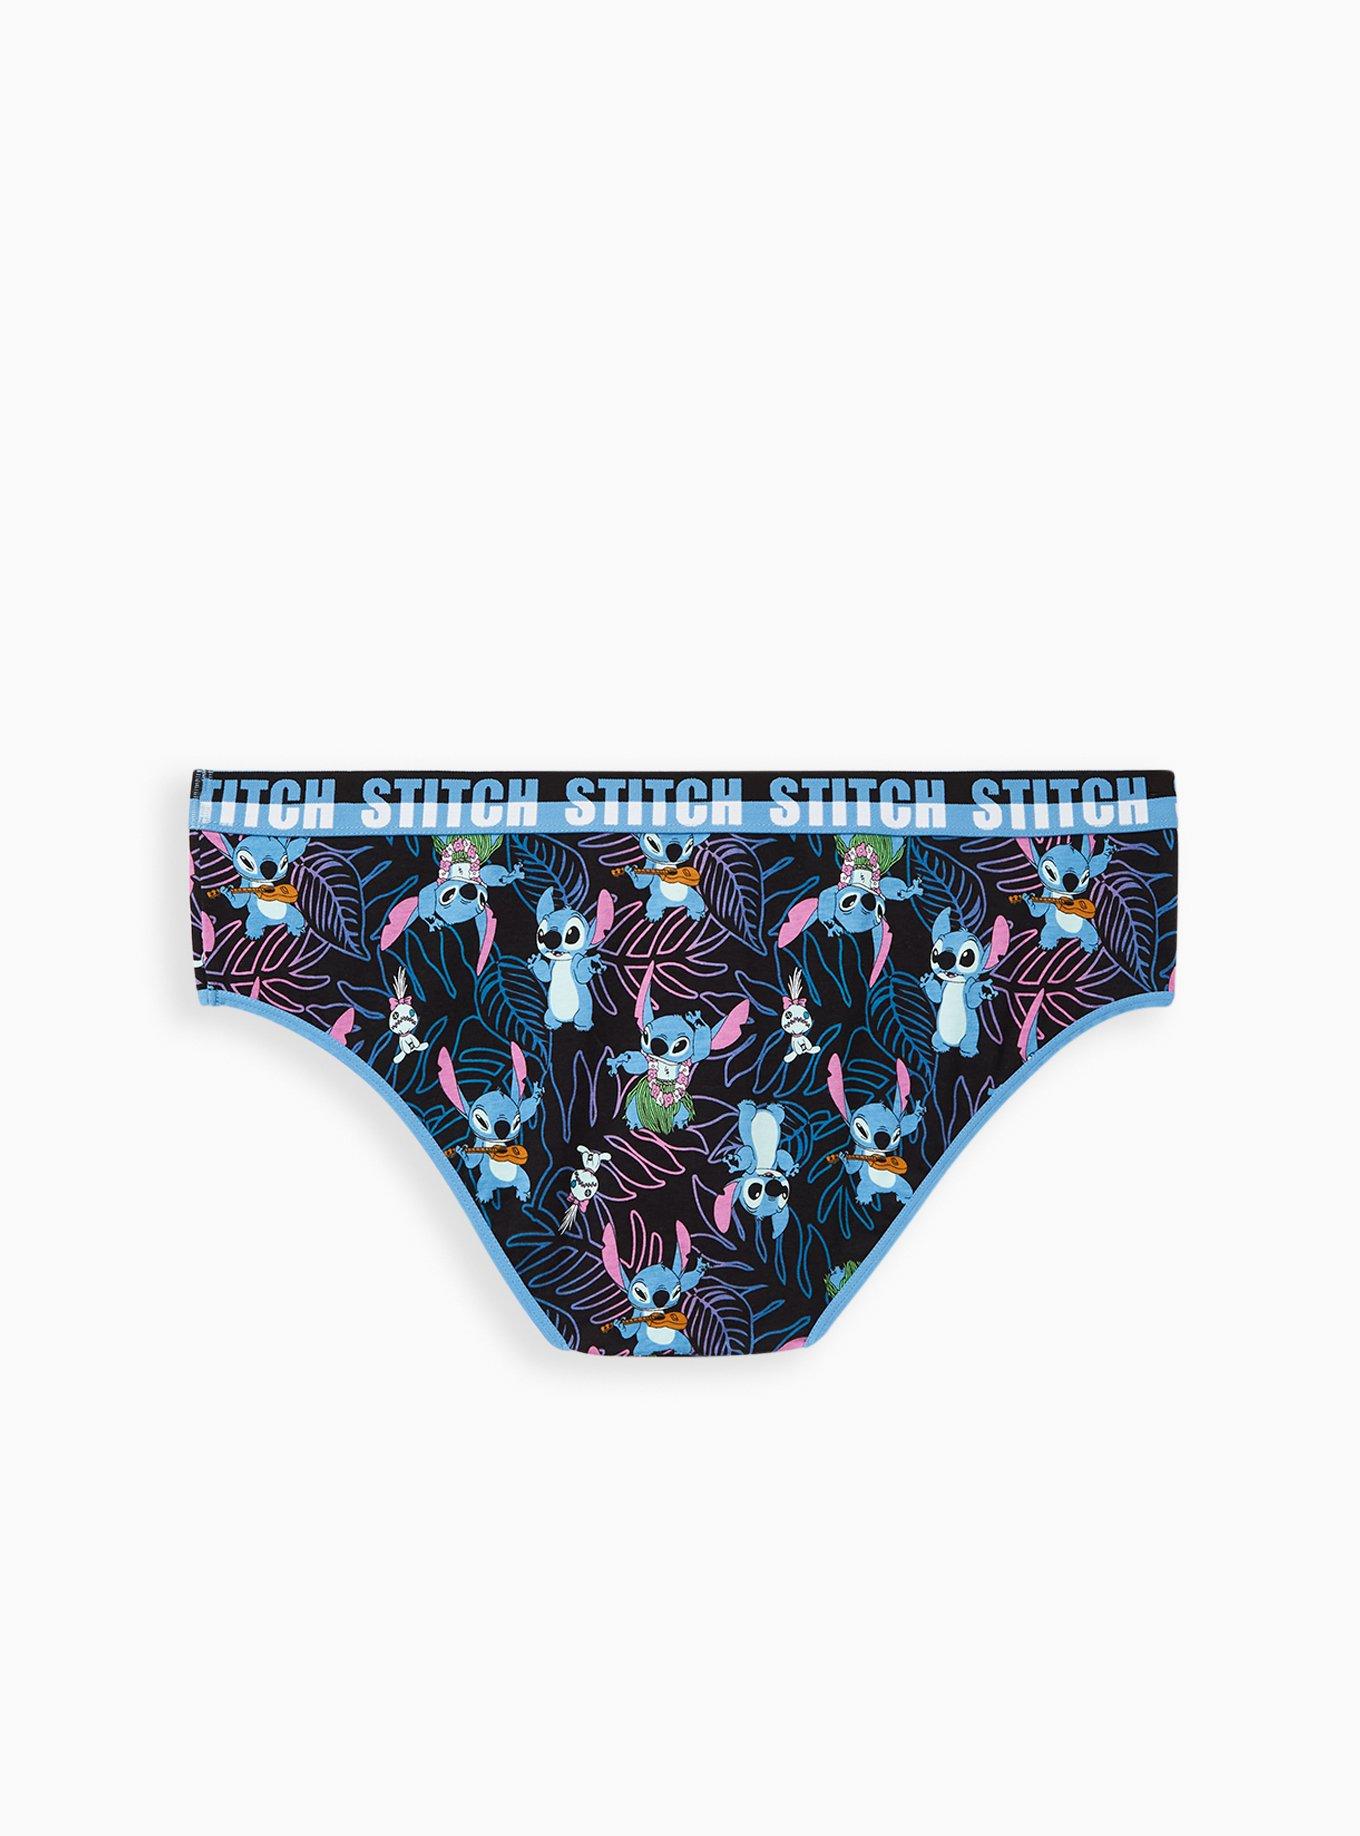 torrid, Intimates & Sleepwear, Torrid 2x Hipster Disney Stitch Underwear